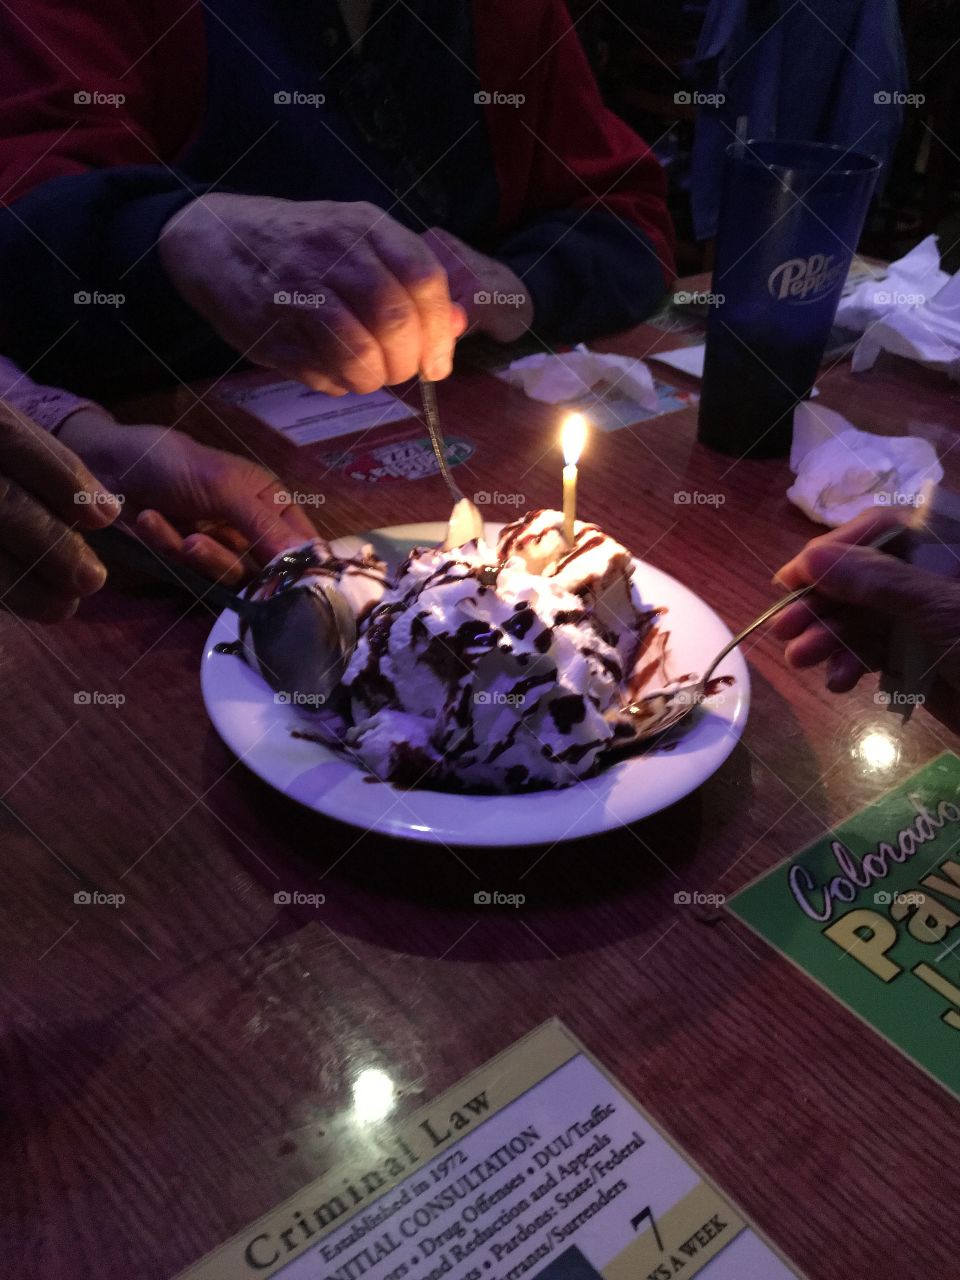 Sharing birthday cake